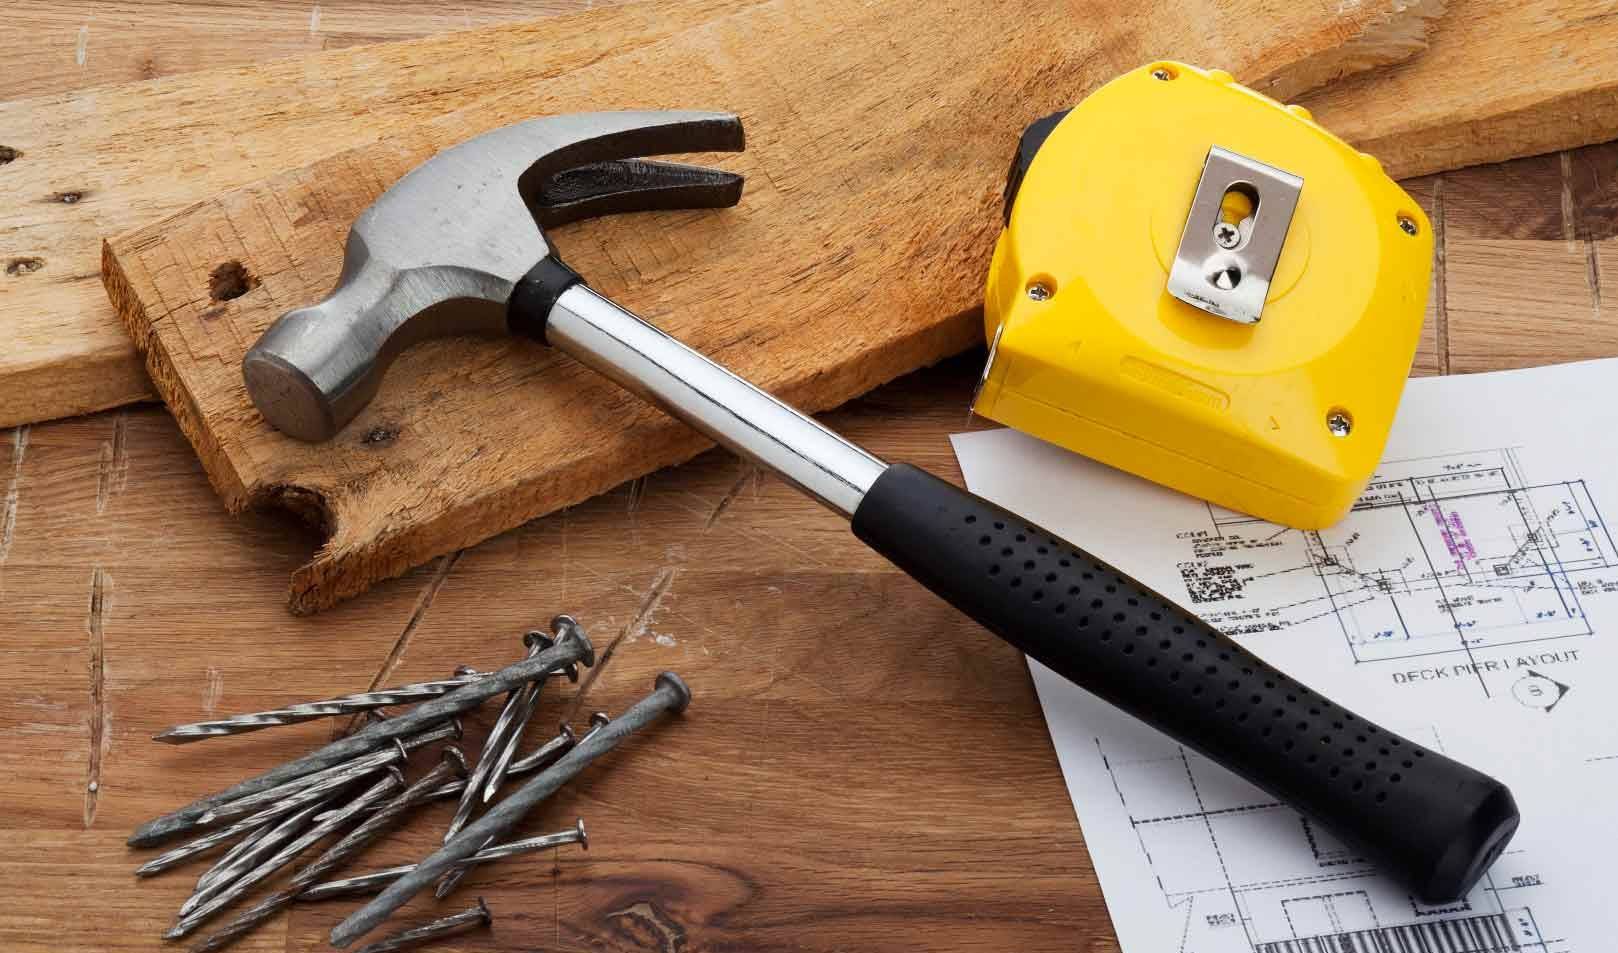 Сайт про инструменты. Строительные инструменты. Инструменты для ремонта. Молоток строительный. Строительные приспособления и инструменты.